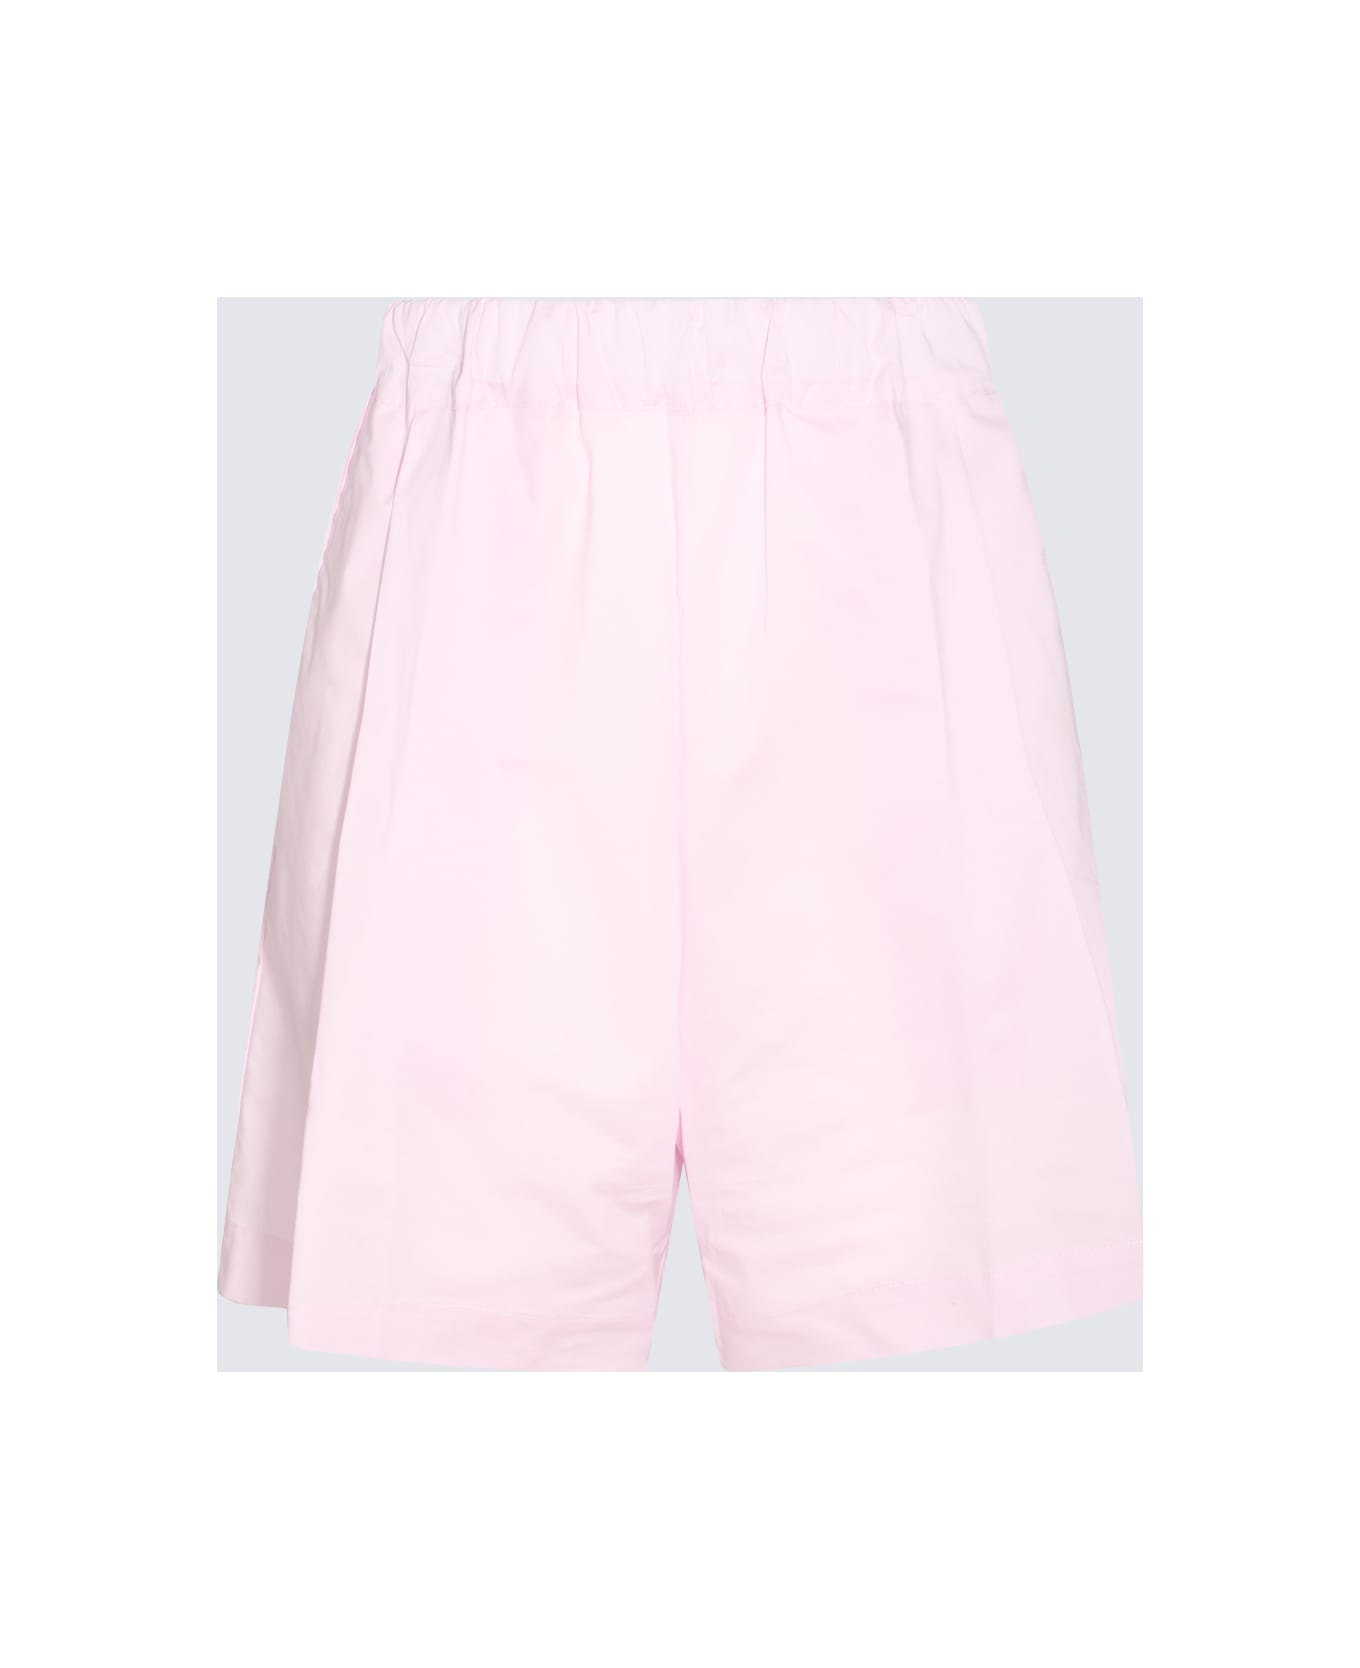 Laneus Pink Cotton Shorts - Pink